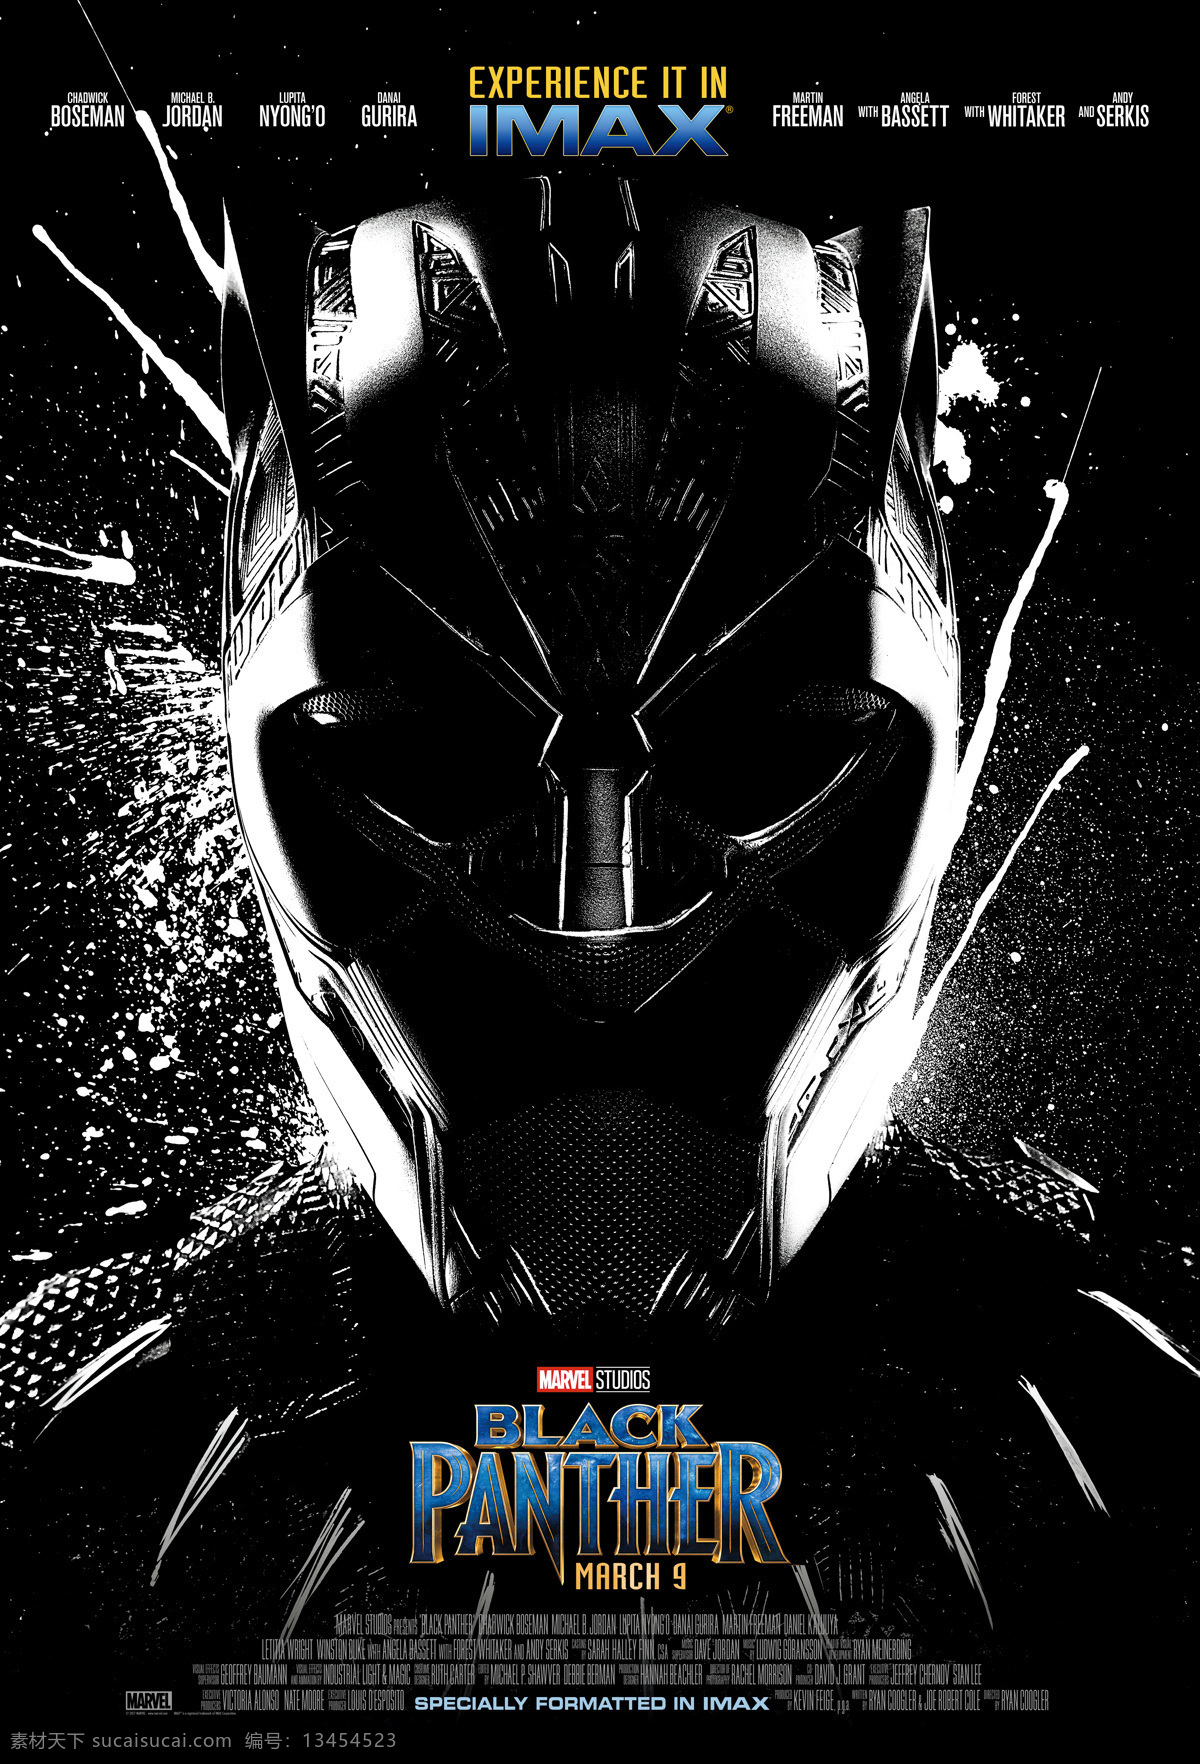 黑豹 复仇者联盟 瓦坎达 首领 超级英雄 logo 领袖 漫威 英雄 漫威宇宙 电影海报 marvel cinematic 文化艺术 影视娱乐